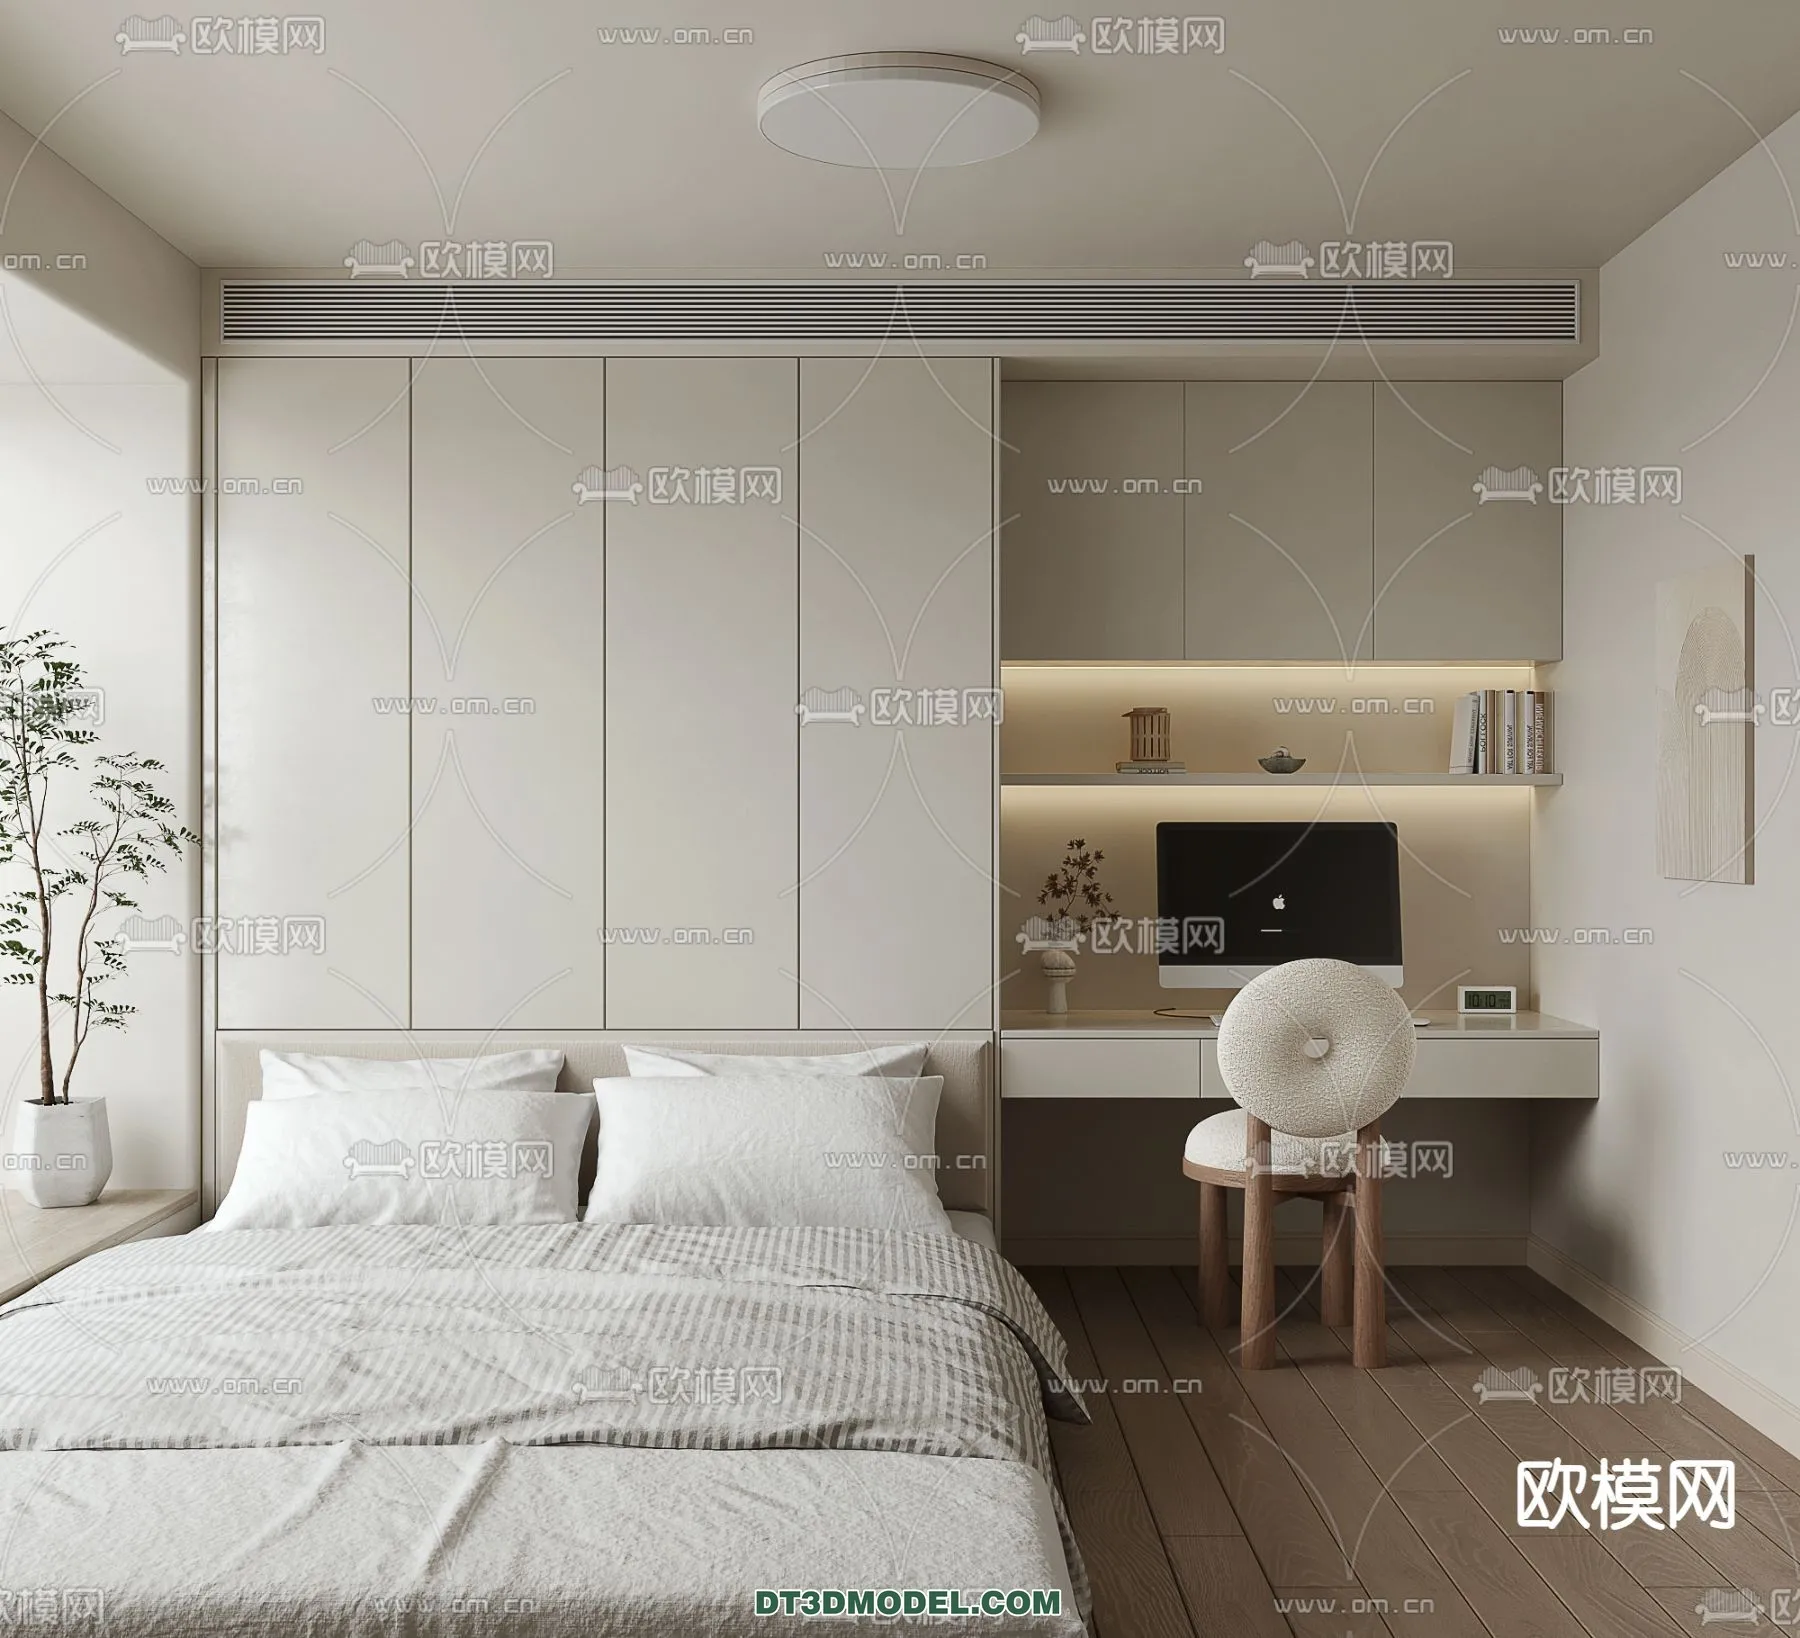 Tatami Bedroom – Japan Bedroom – 3D Scene – 040